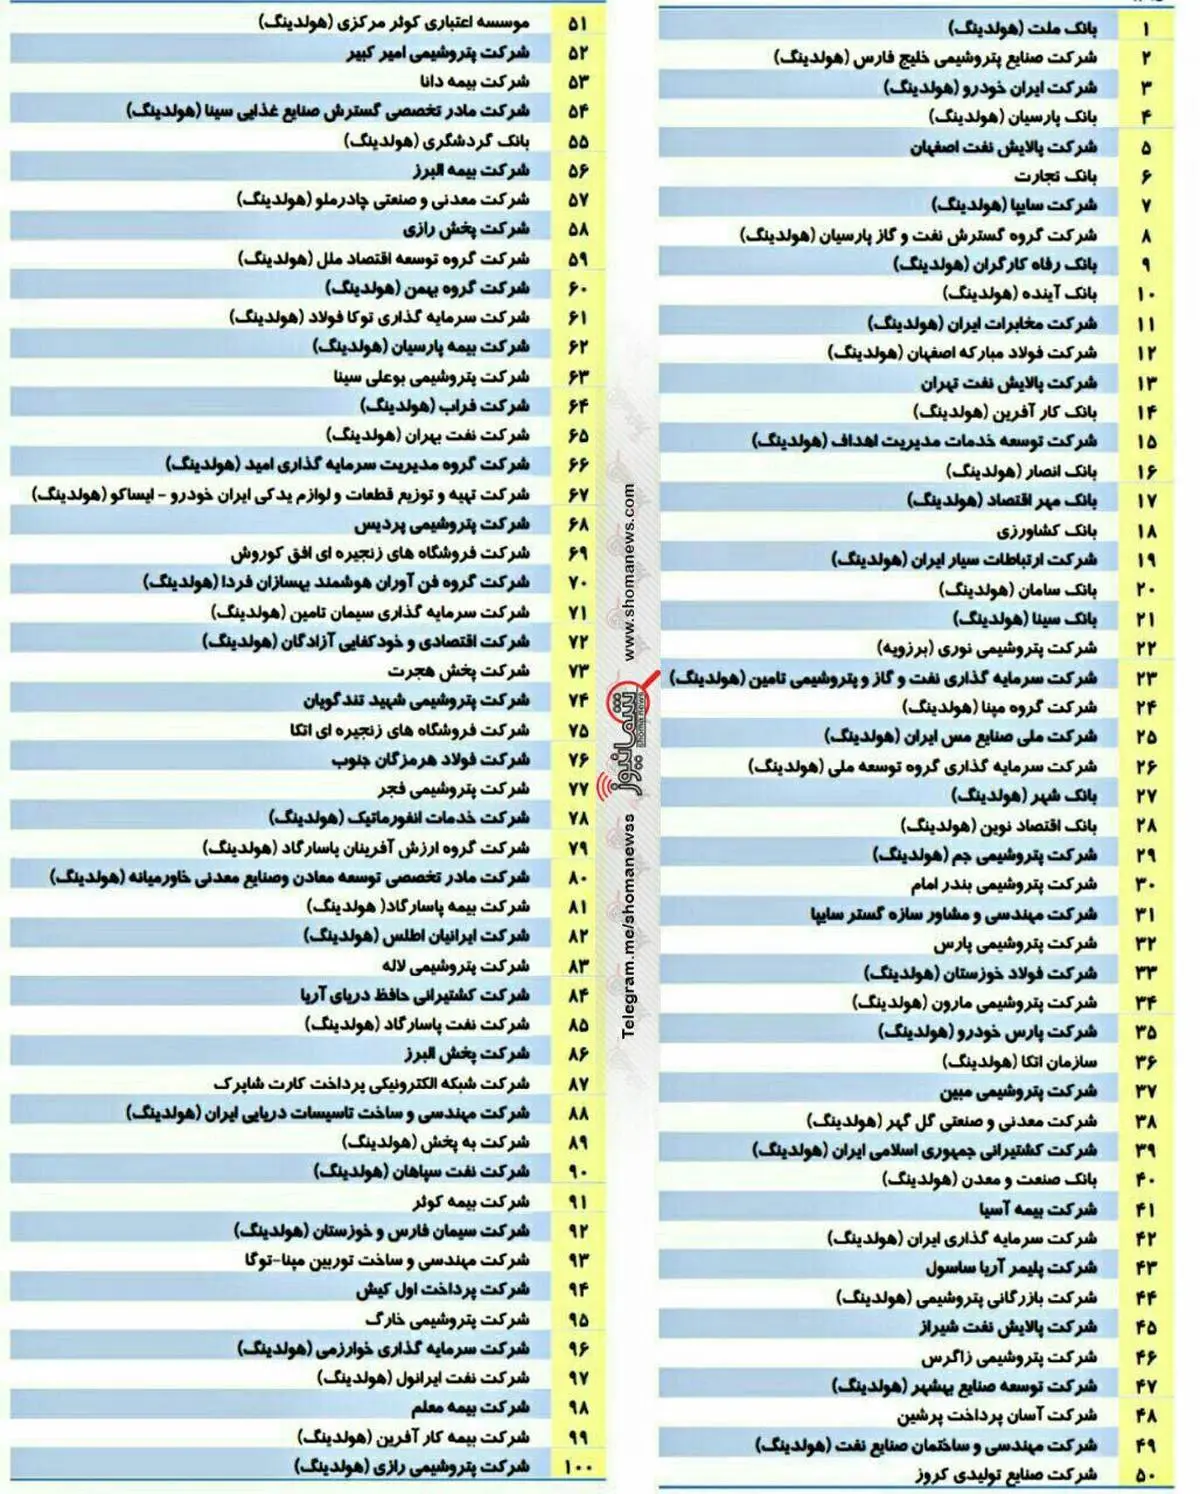 صد شرکت برتر کشور در سال ۱۳۹۶